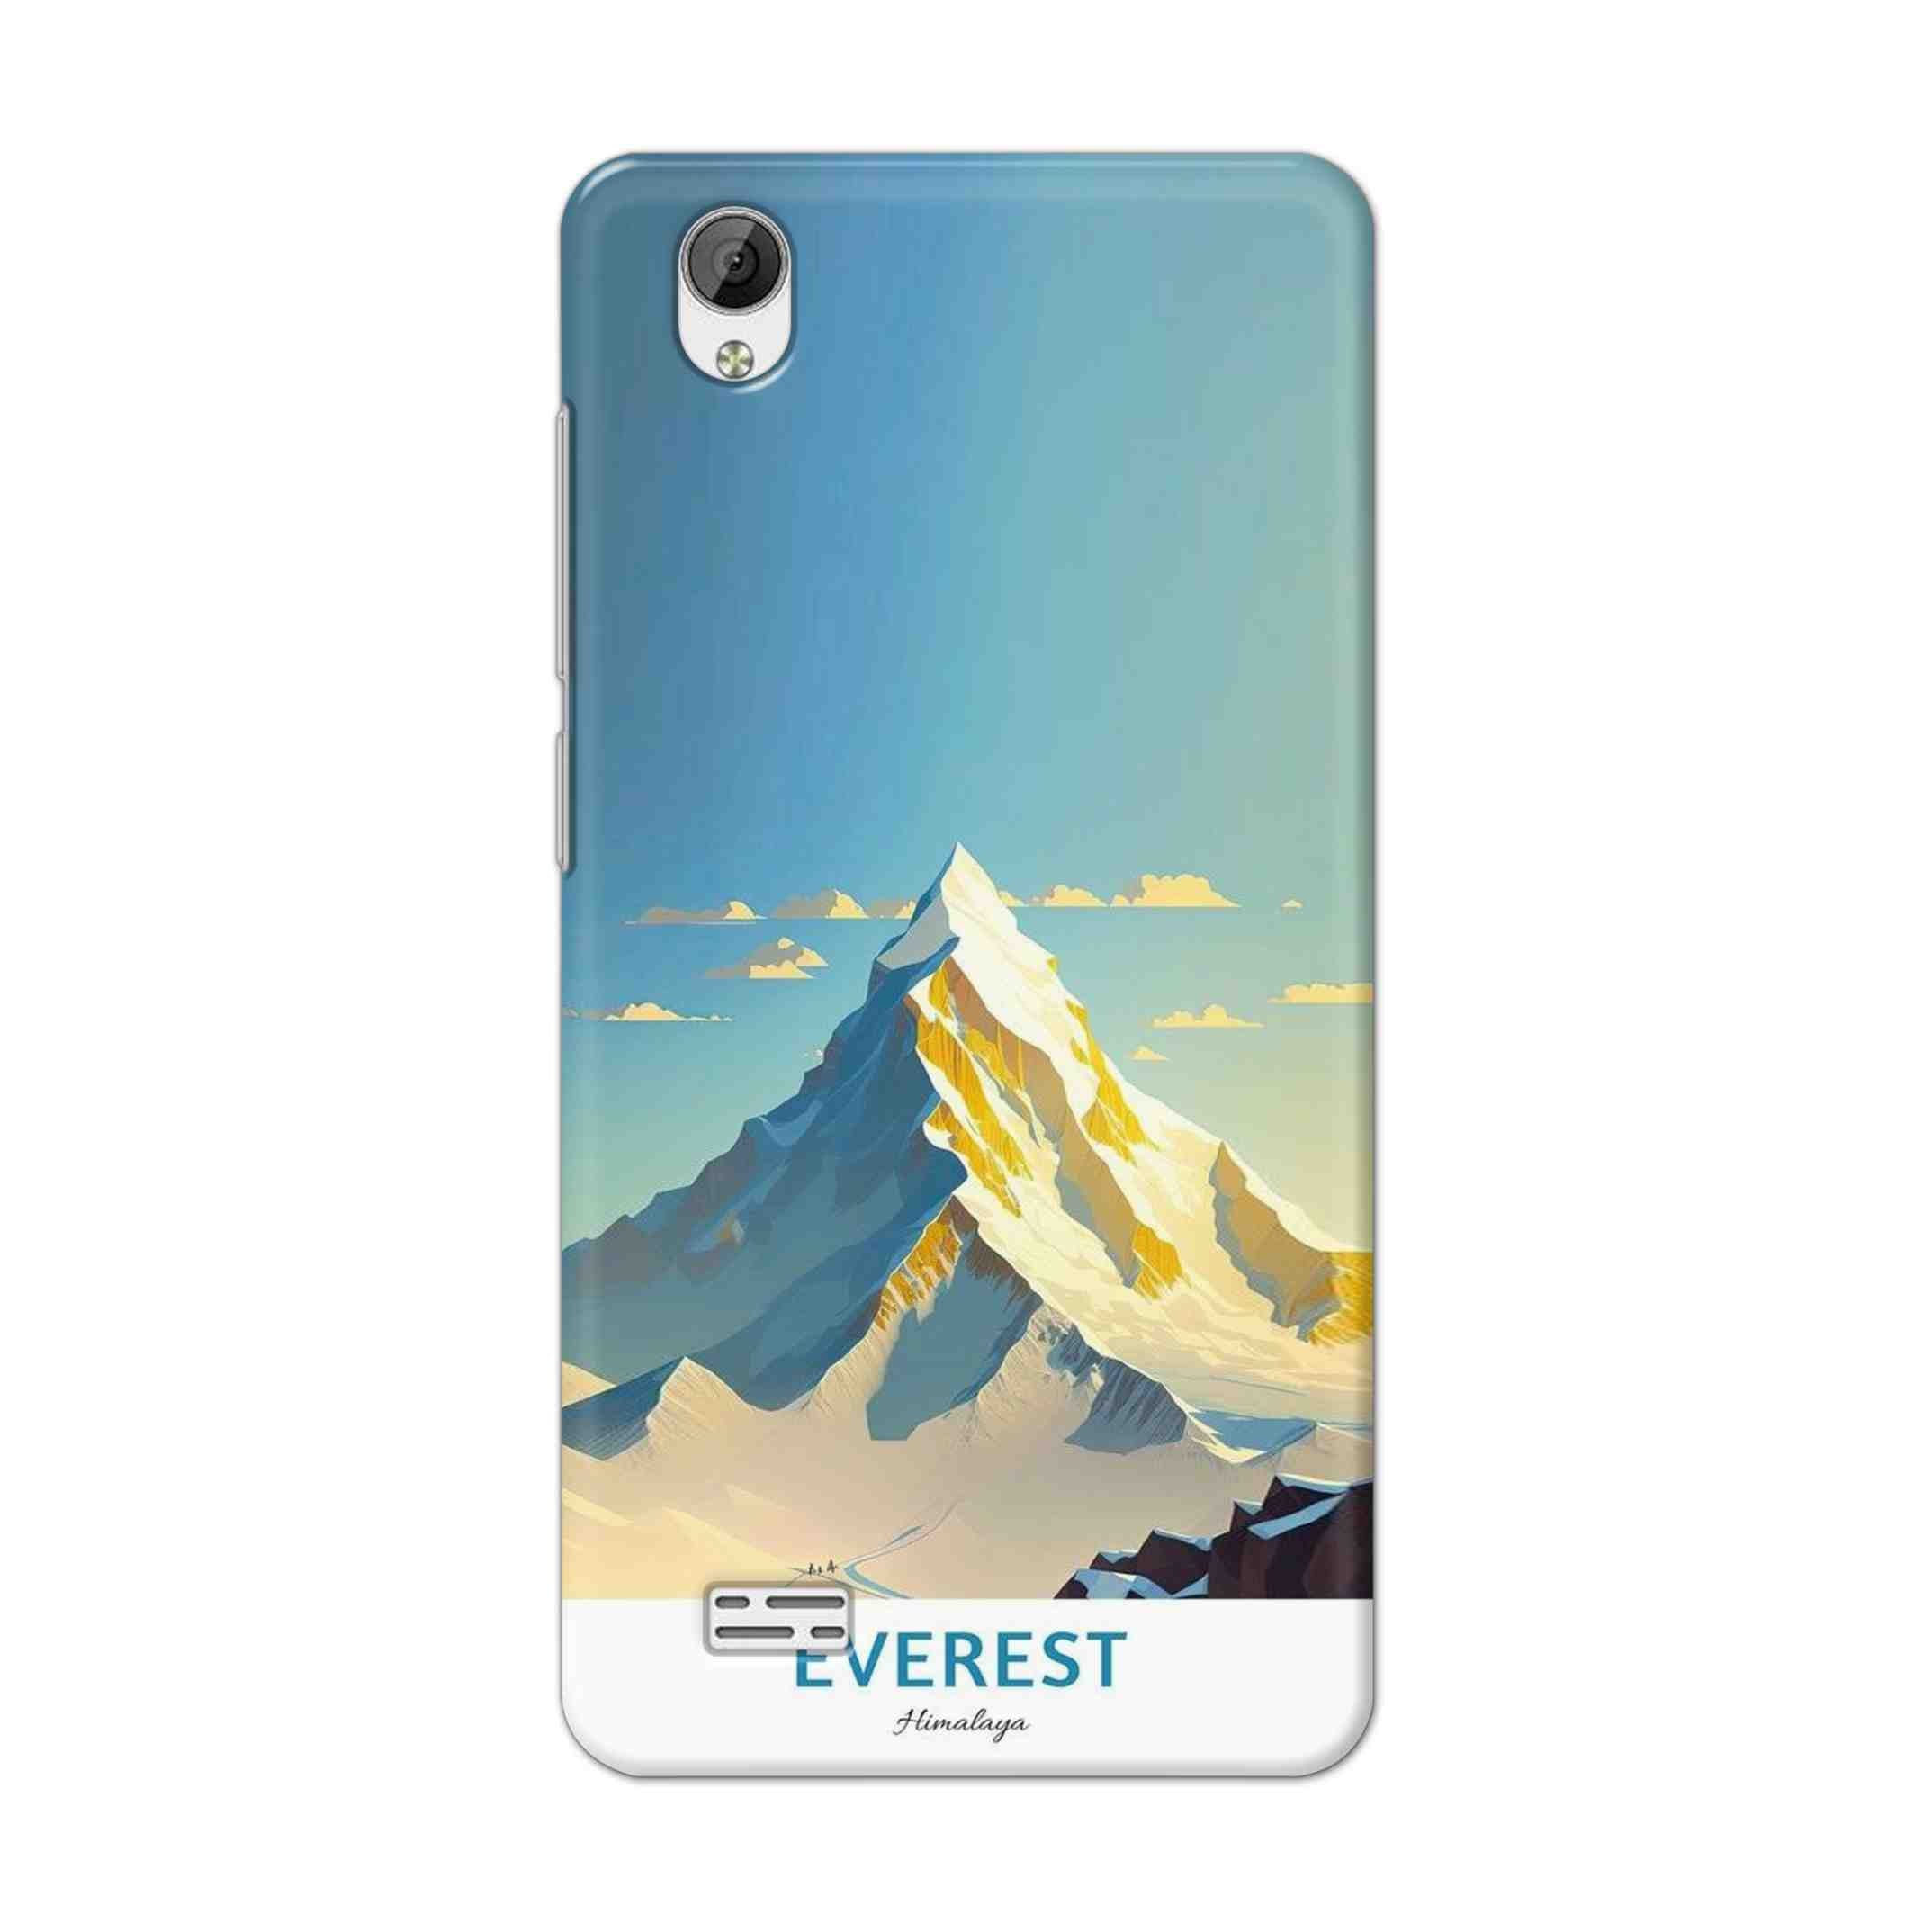 Buy Everest Hard Back Mobile Phone Case Cover For Vivo Y31 Online